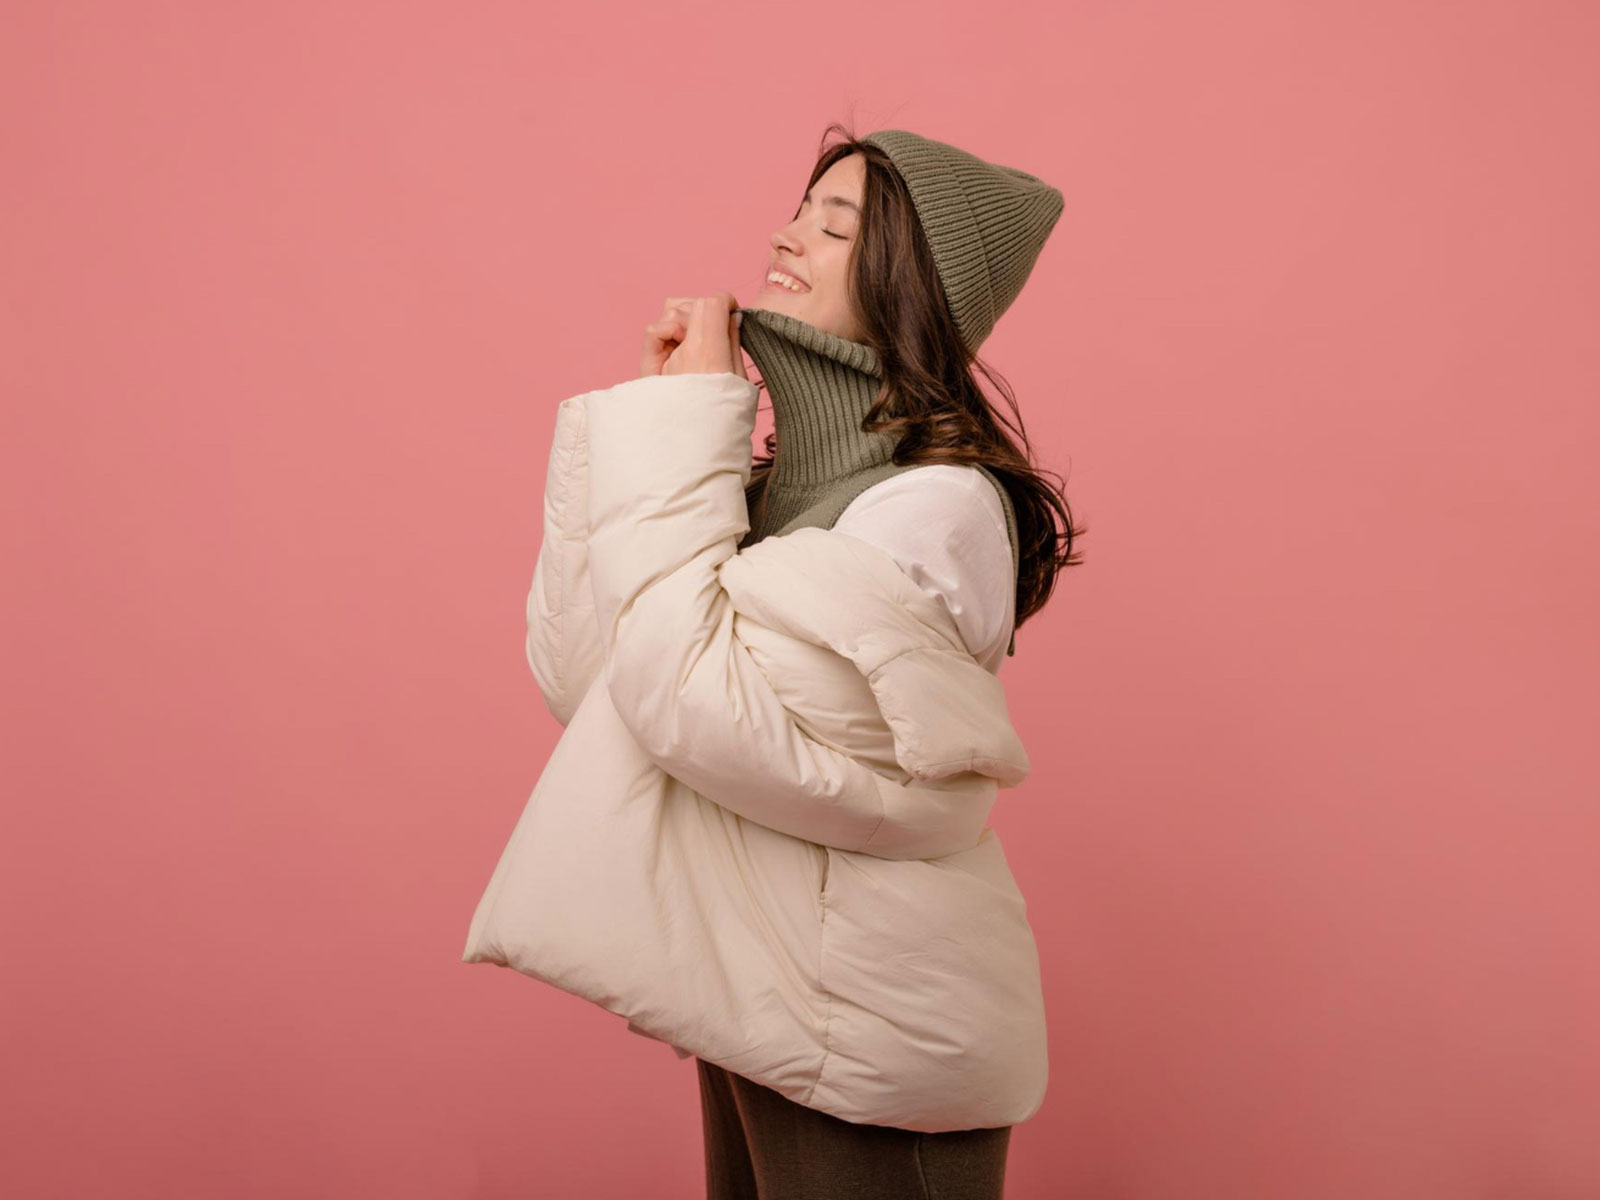 infoblog dresscloud Gdzie kupić ubrania na zimę?